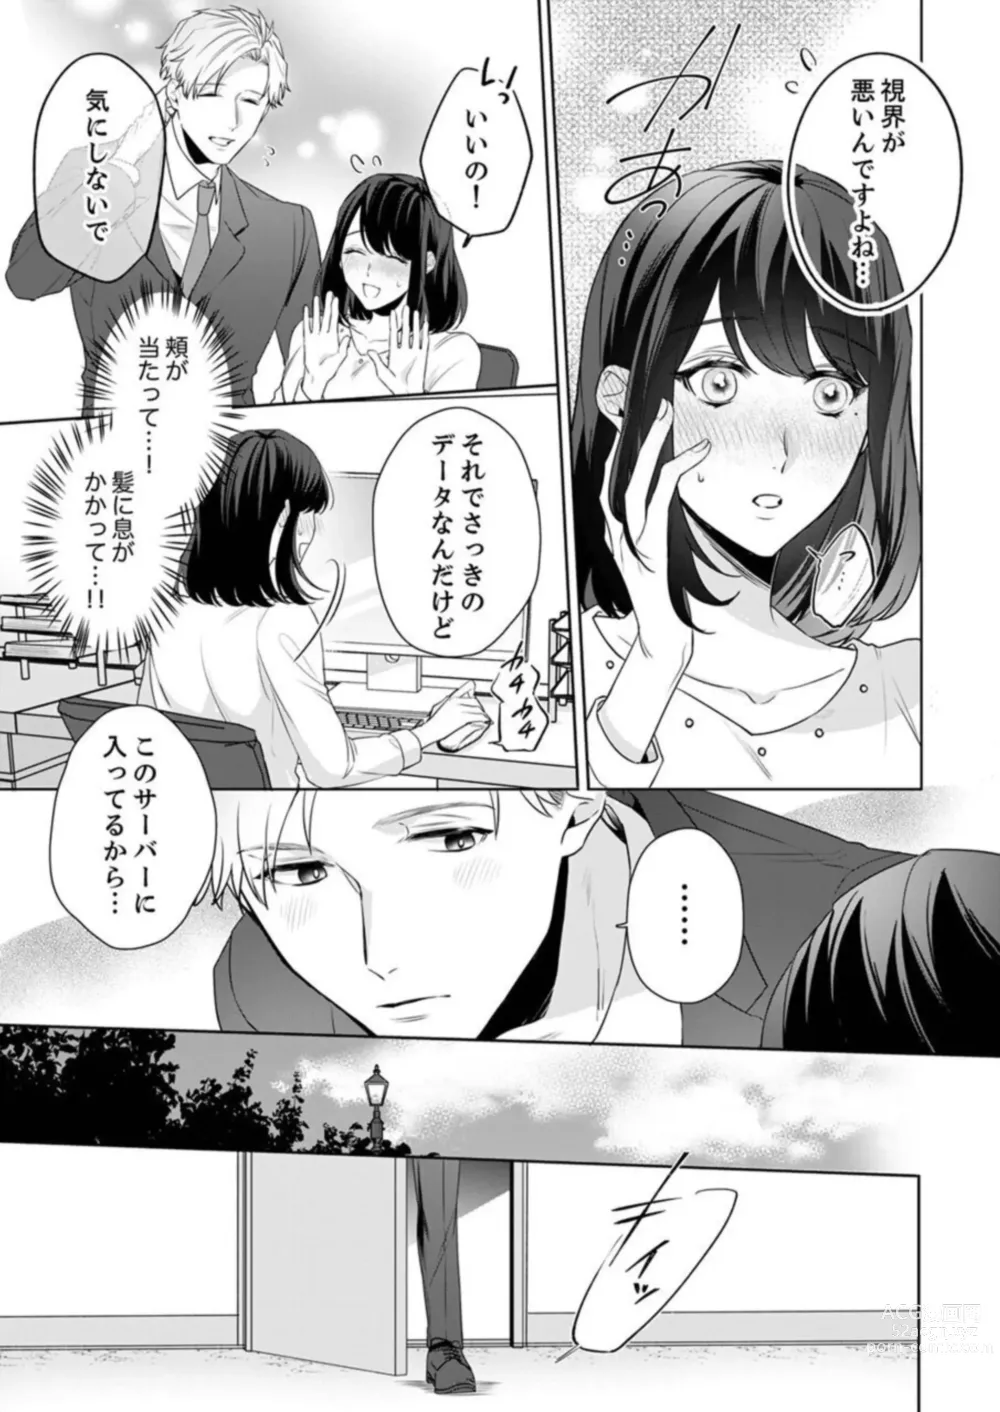 Page 13 of manga Oshi ni no Buka no Koshikudake Kisu 〜 Desuku no ue de Torotoro ni Nurete 1-2